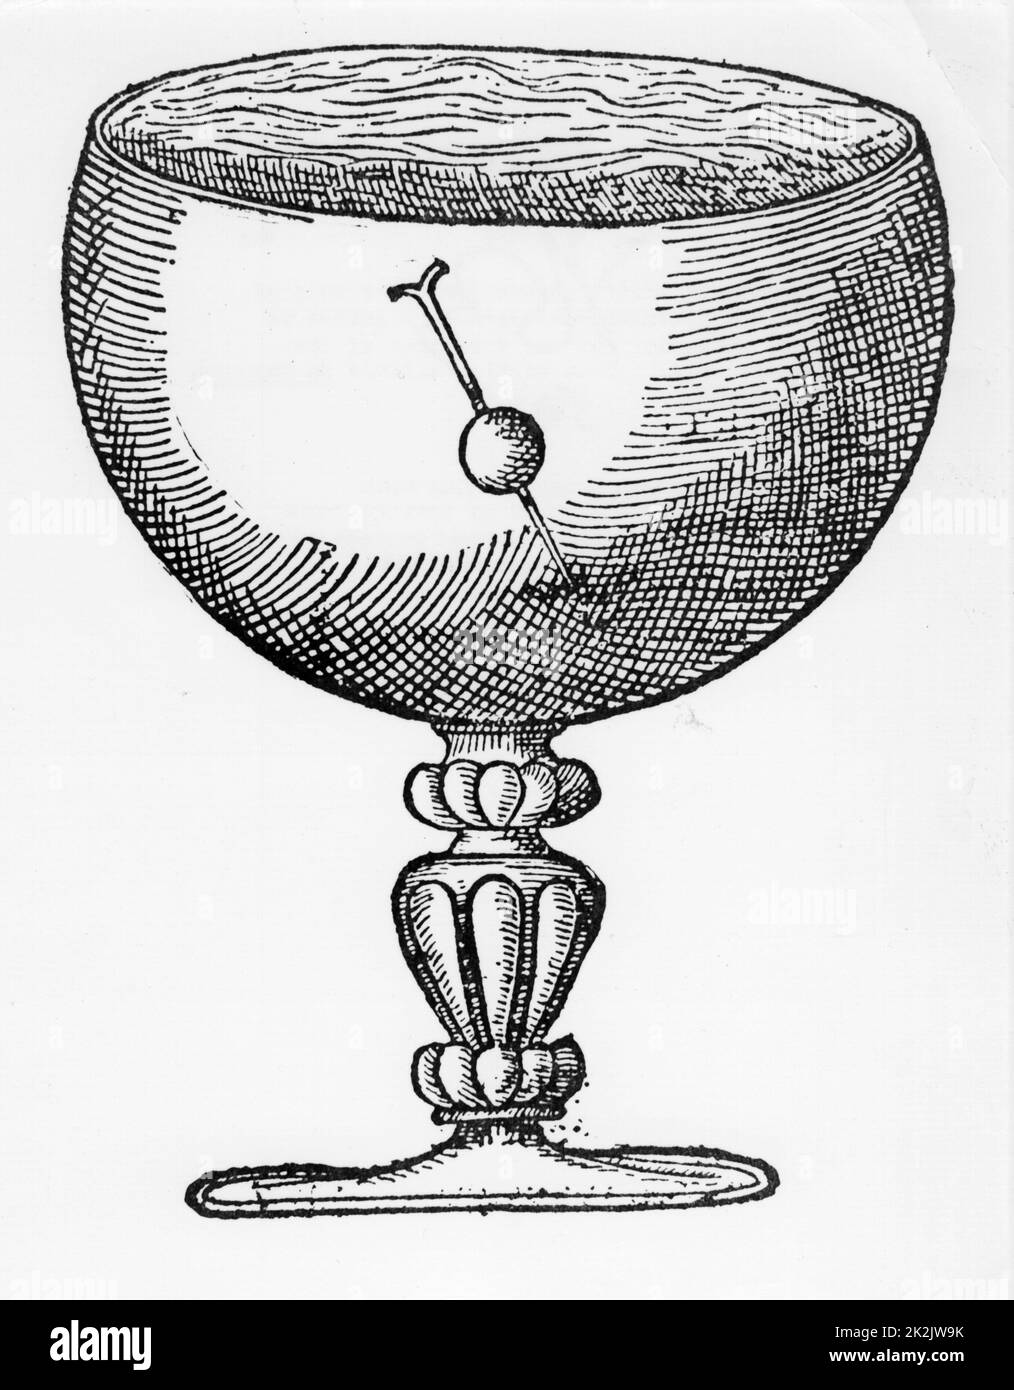 Eine magnetisierte Nadel durch eine Kugel aus Kork geschoben und Floating in einem Becher Wasser getaucht, zeigt, Tauchen und die Richtung der magnetischen Pole. Von William Gilbert 'De Magnete', London 1600 Stockfoto